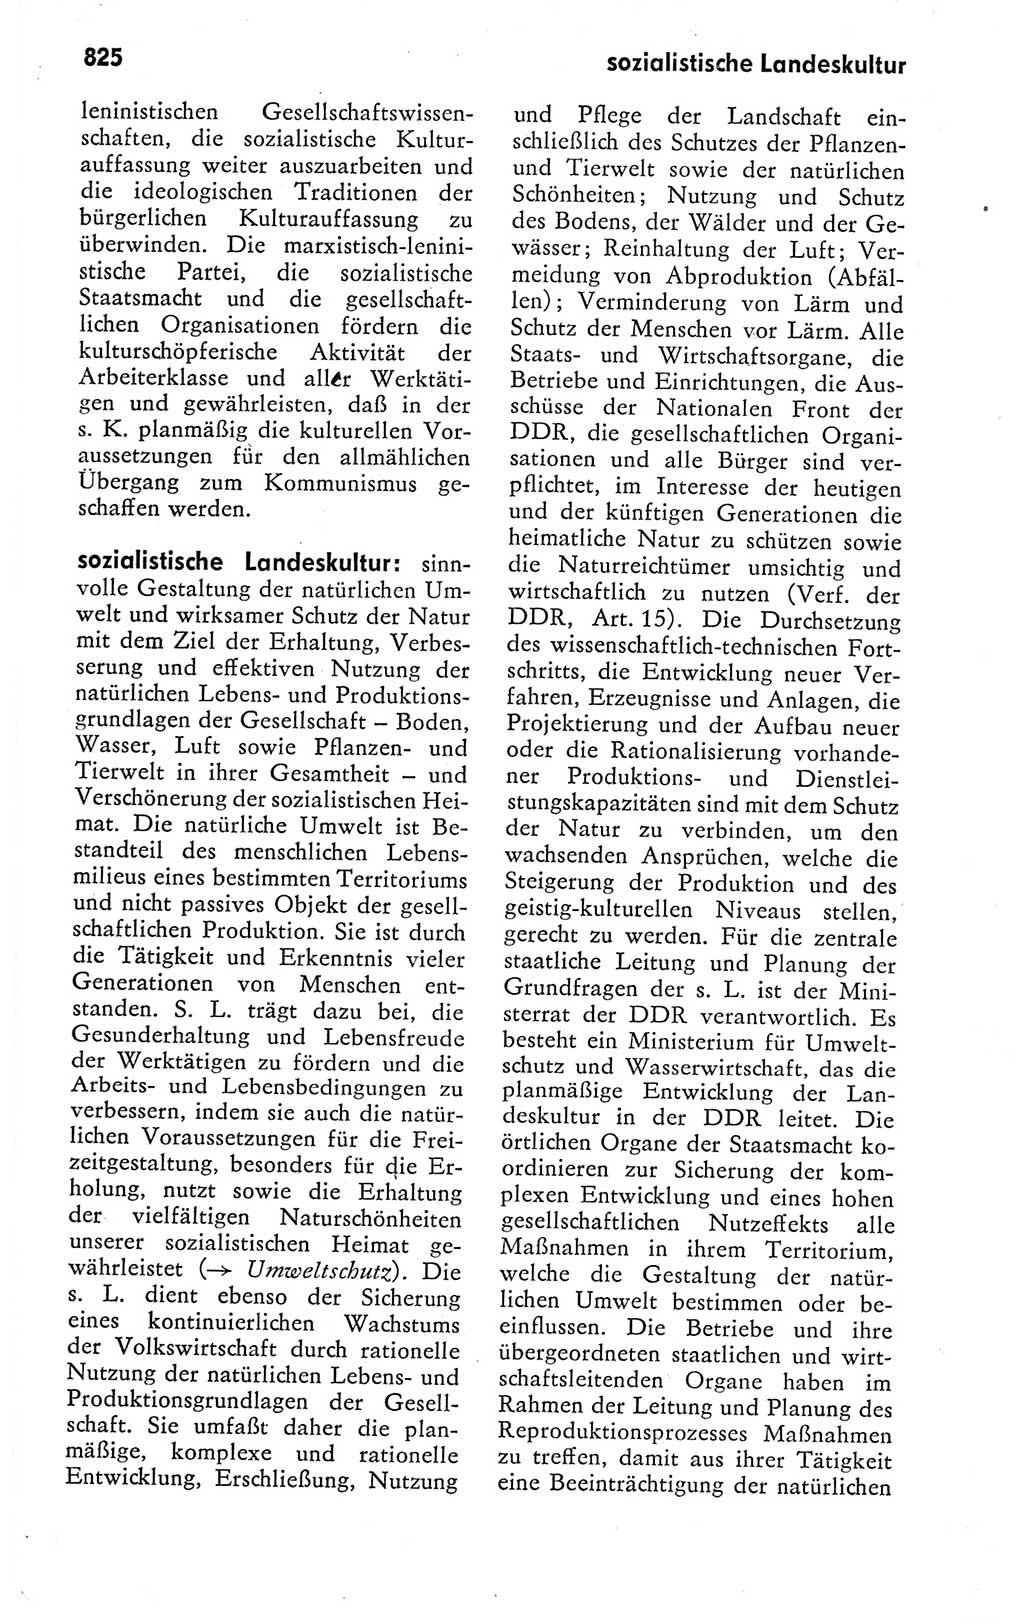 Kleines politisches Wörterbuch [Deutsche Demokratische Republik (DDR)] 1978, Seite 825 (Kl. pol. Wb. DDR 1978, S. 825)